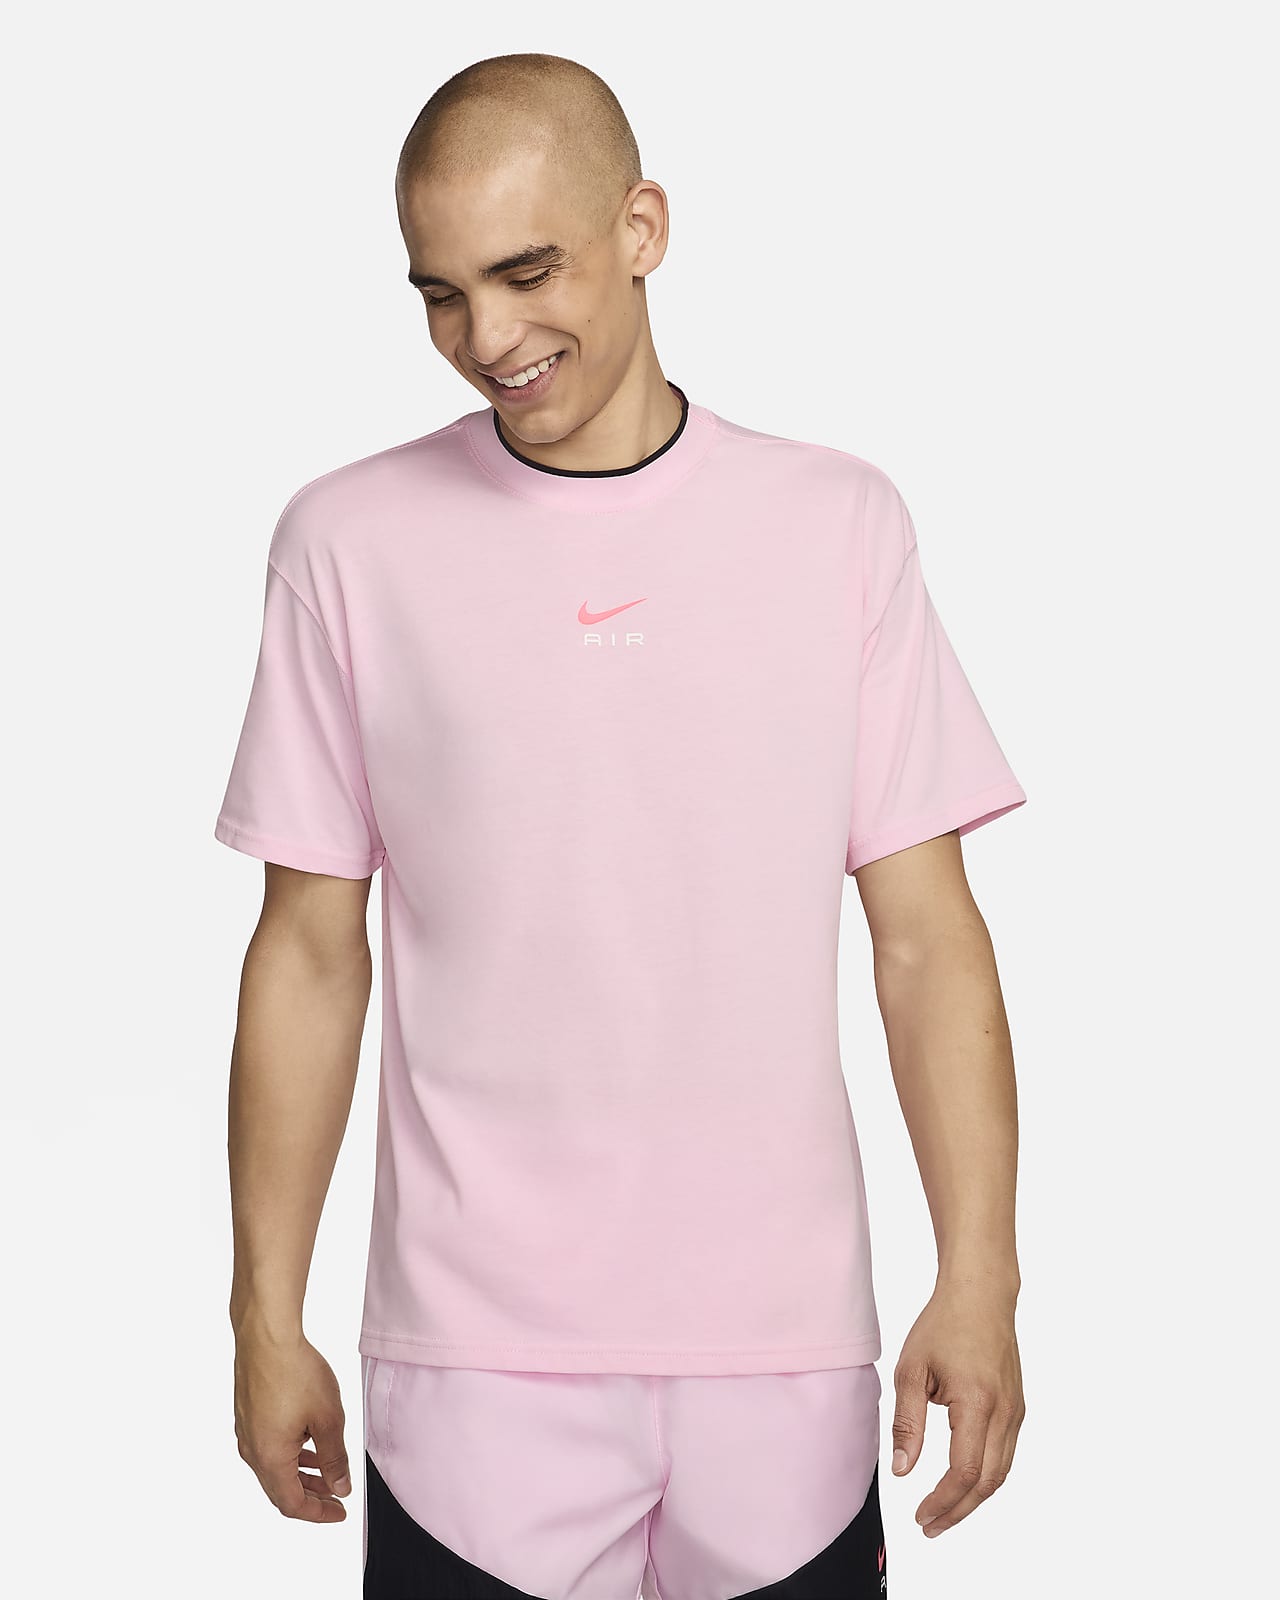 T-shirt Nike Air pour homme